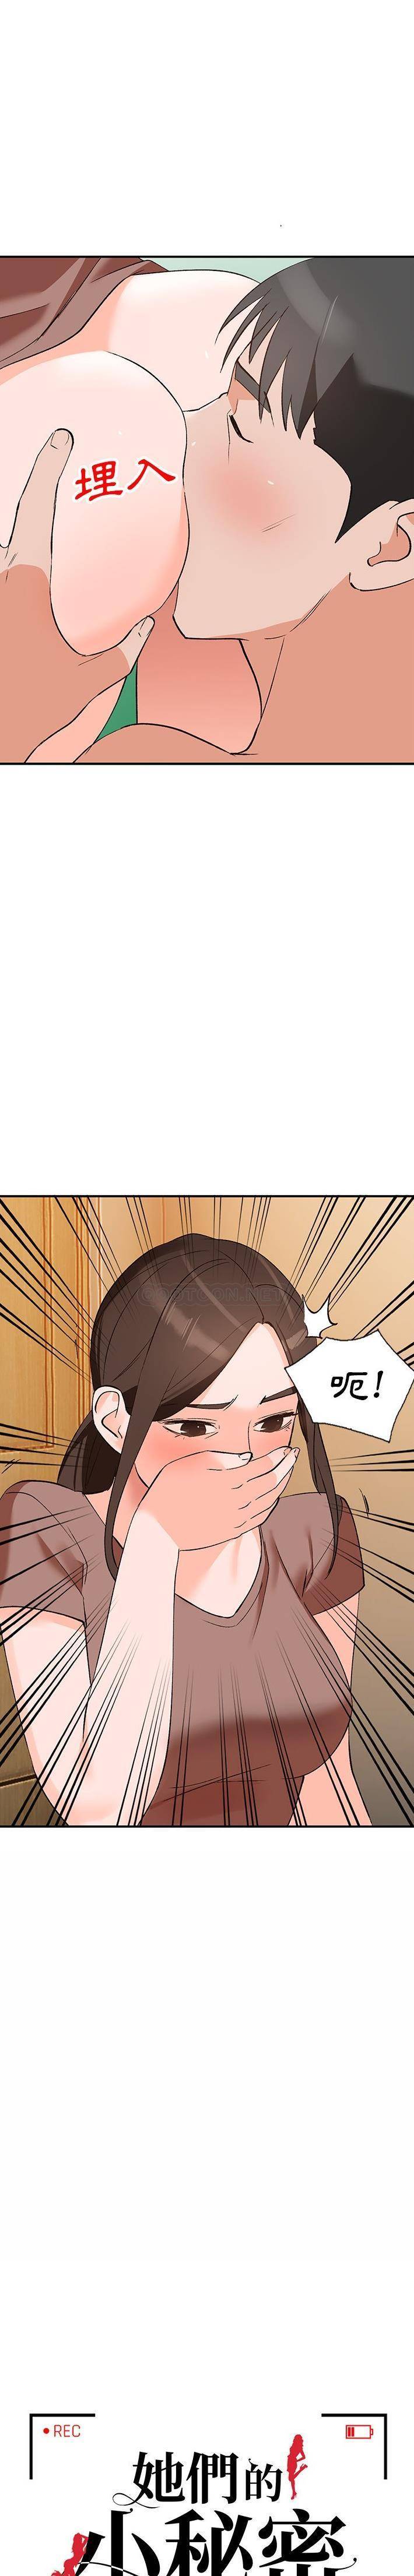 韩国污漫画 她們的小秘密(小鎮上的女人們) 第3话 2